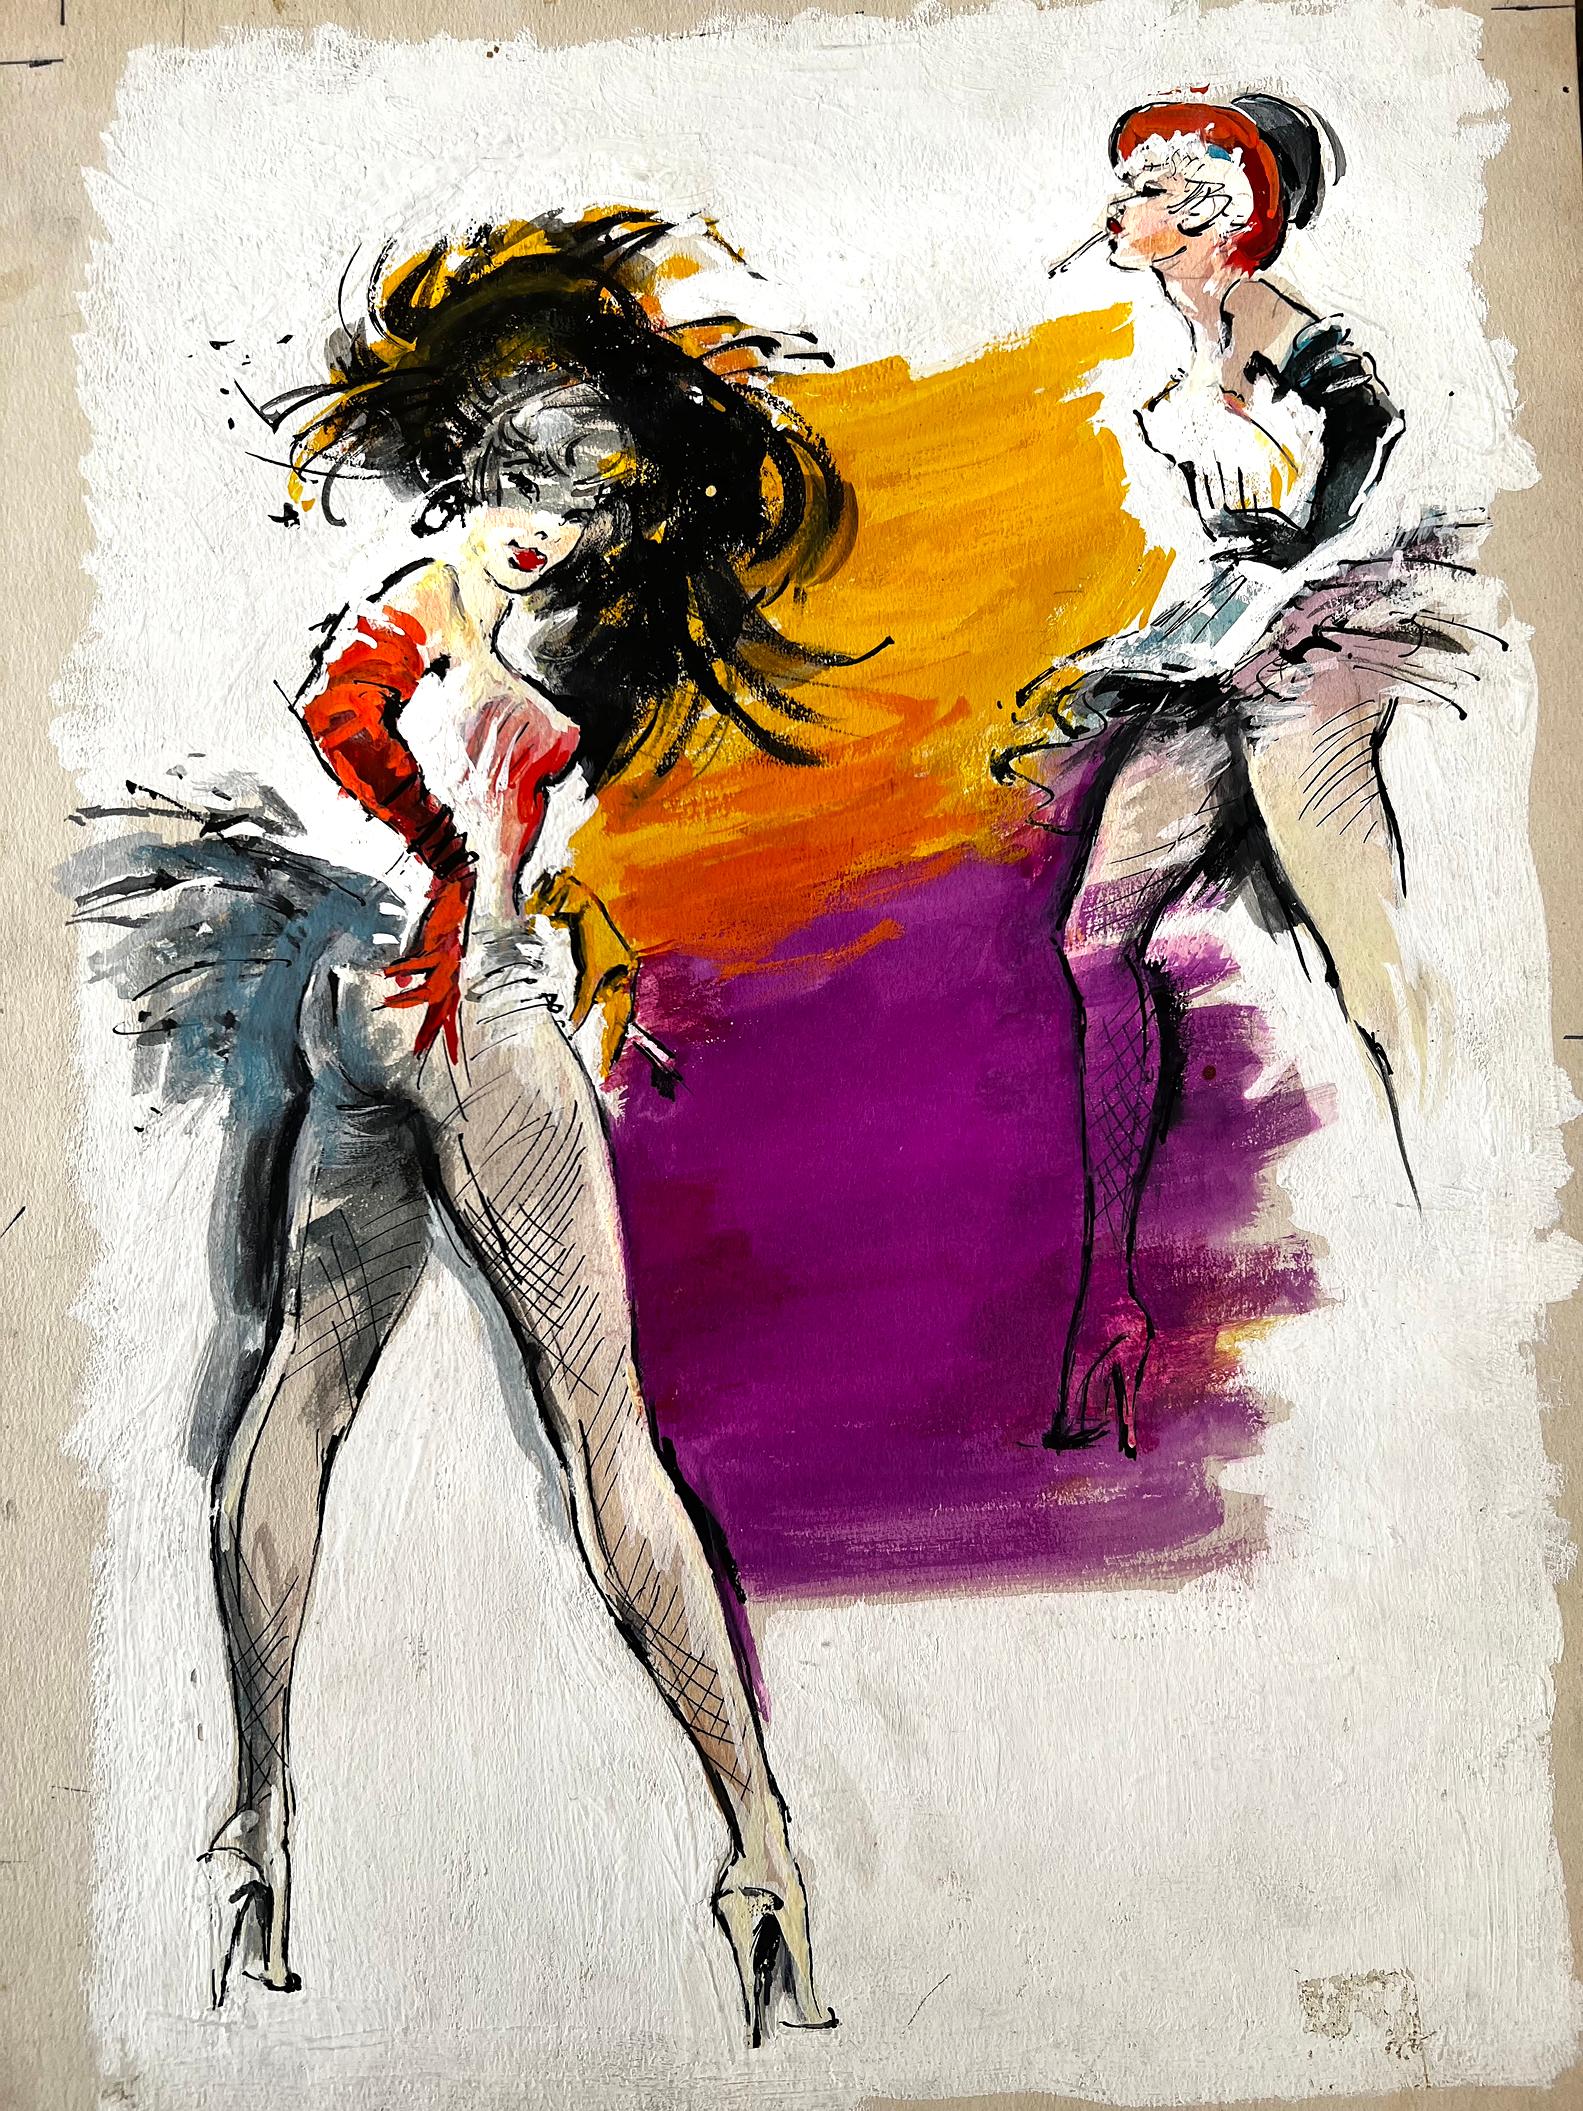 Sexy französische Cabaret-Tänzerinnen – Folies Bergere  Pulp-Taschenbuch-Cover – Painting von George Ziel